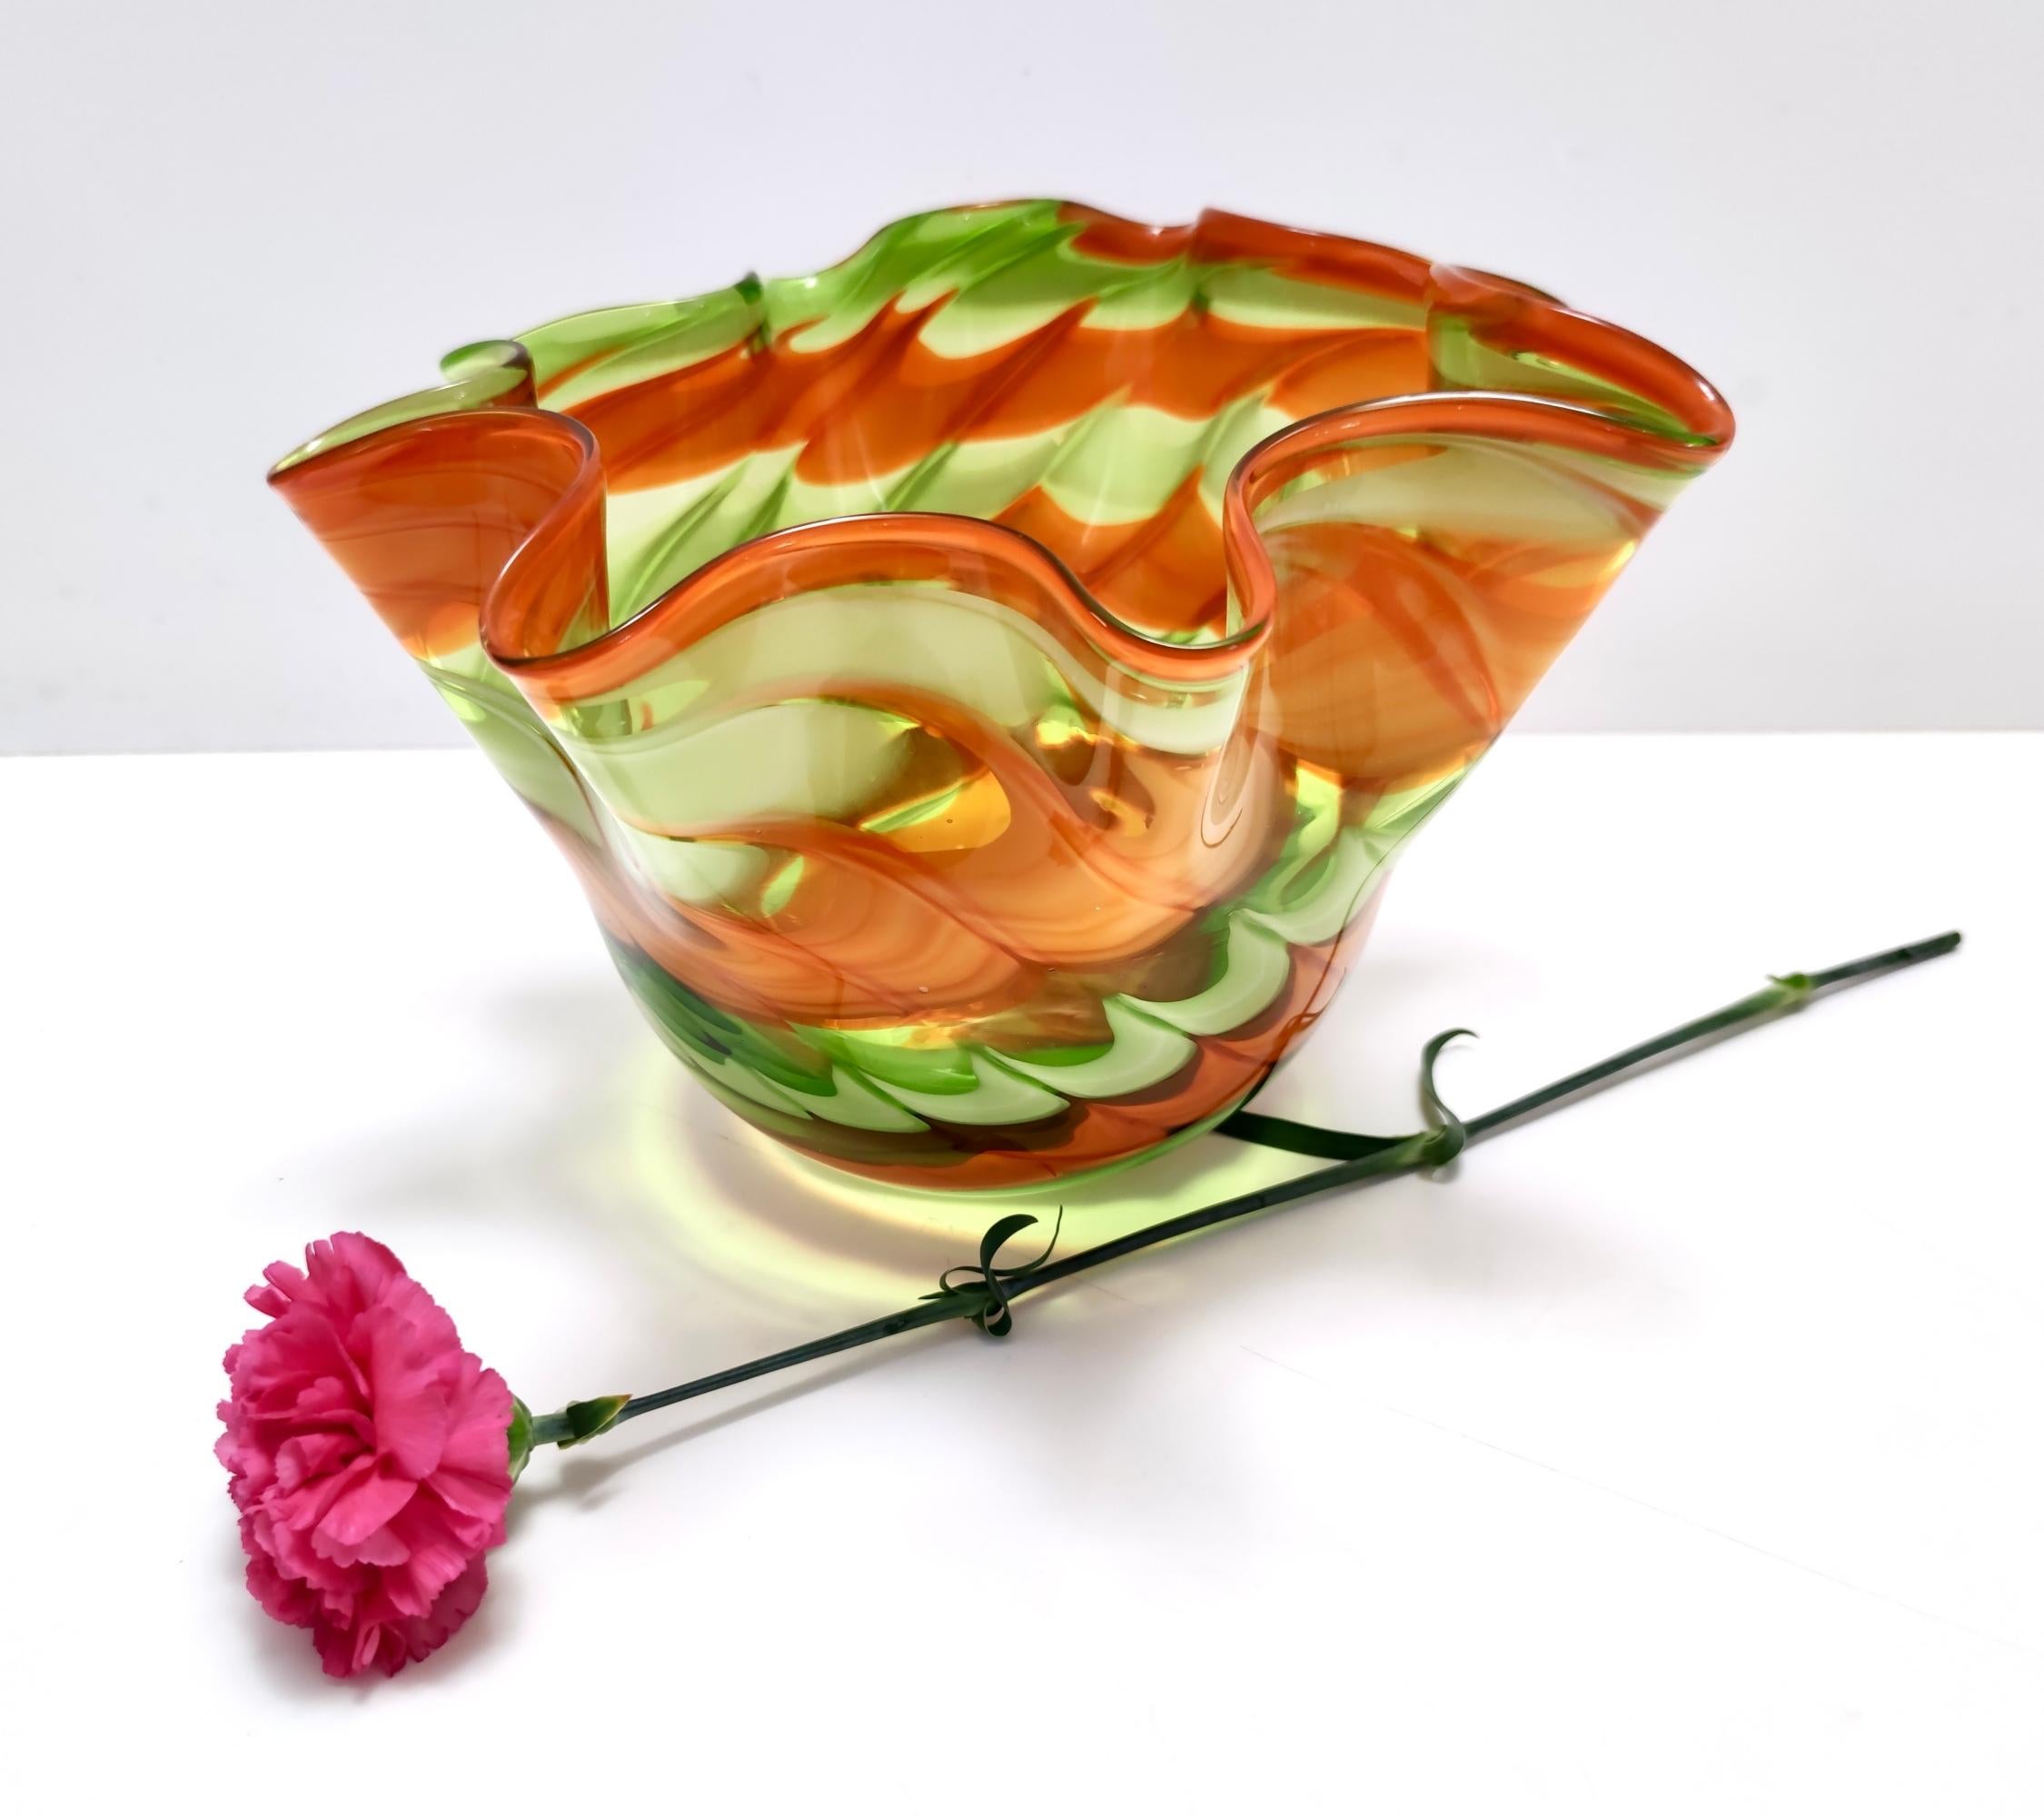 Hergestellt in Italien, 1980er Jahre. 
Dies ist eine Vase aus Murano-Glas von Fratelli Toso mit grünen und orangefarbenen Pinselstrichen.
Da es sich um ein Vintage-Stück handelt, kann es leichte Gebrauchsspuren aufweisen, aber es ist in perfektem